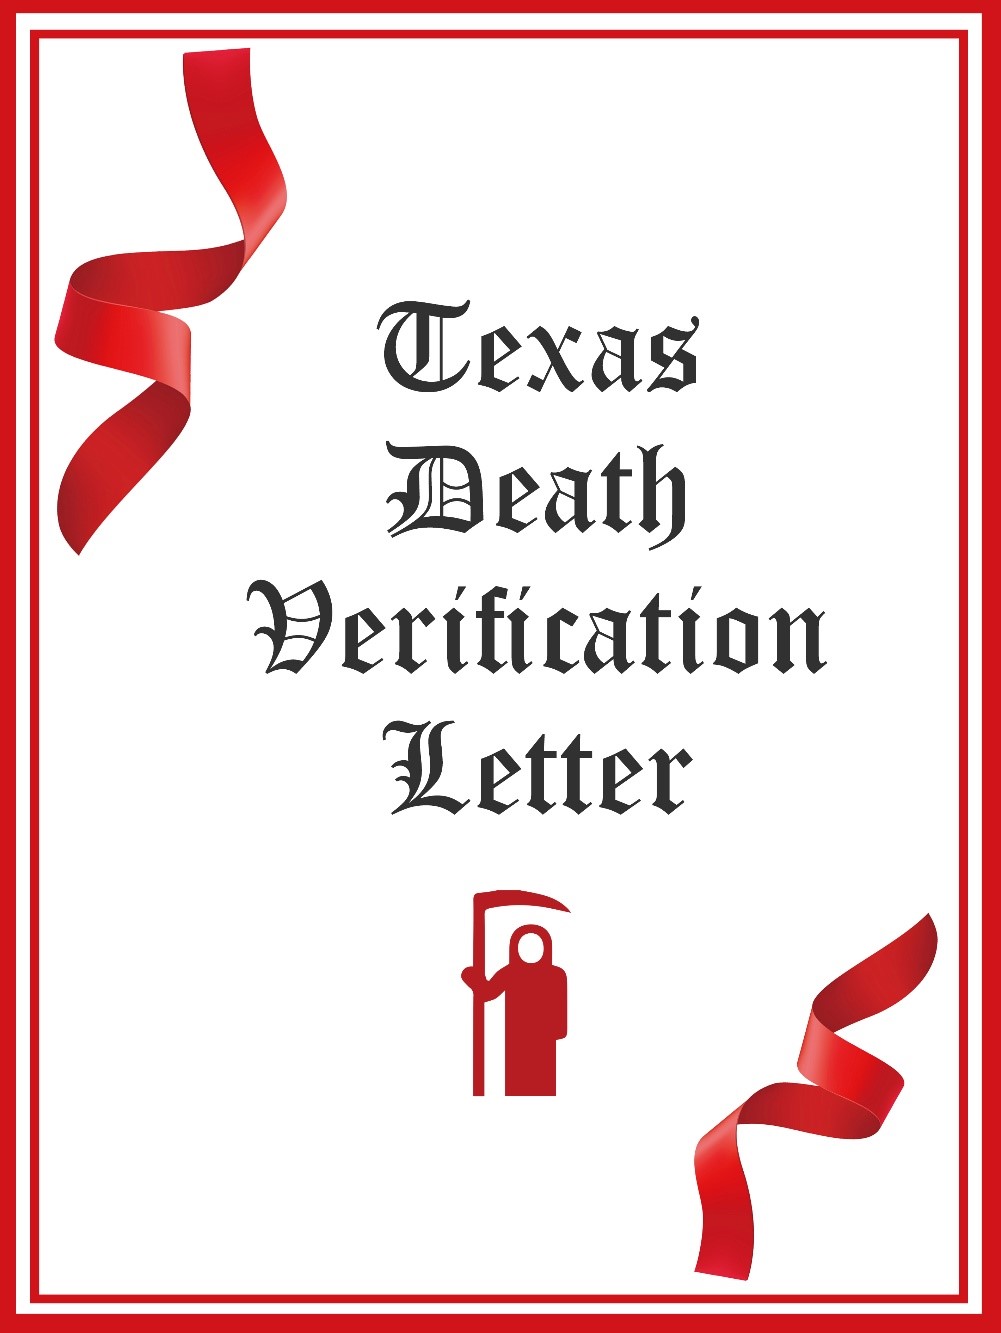 Texas Death Verification Letter